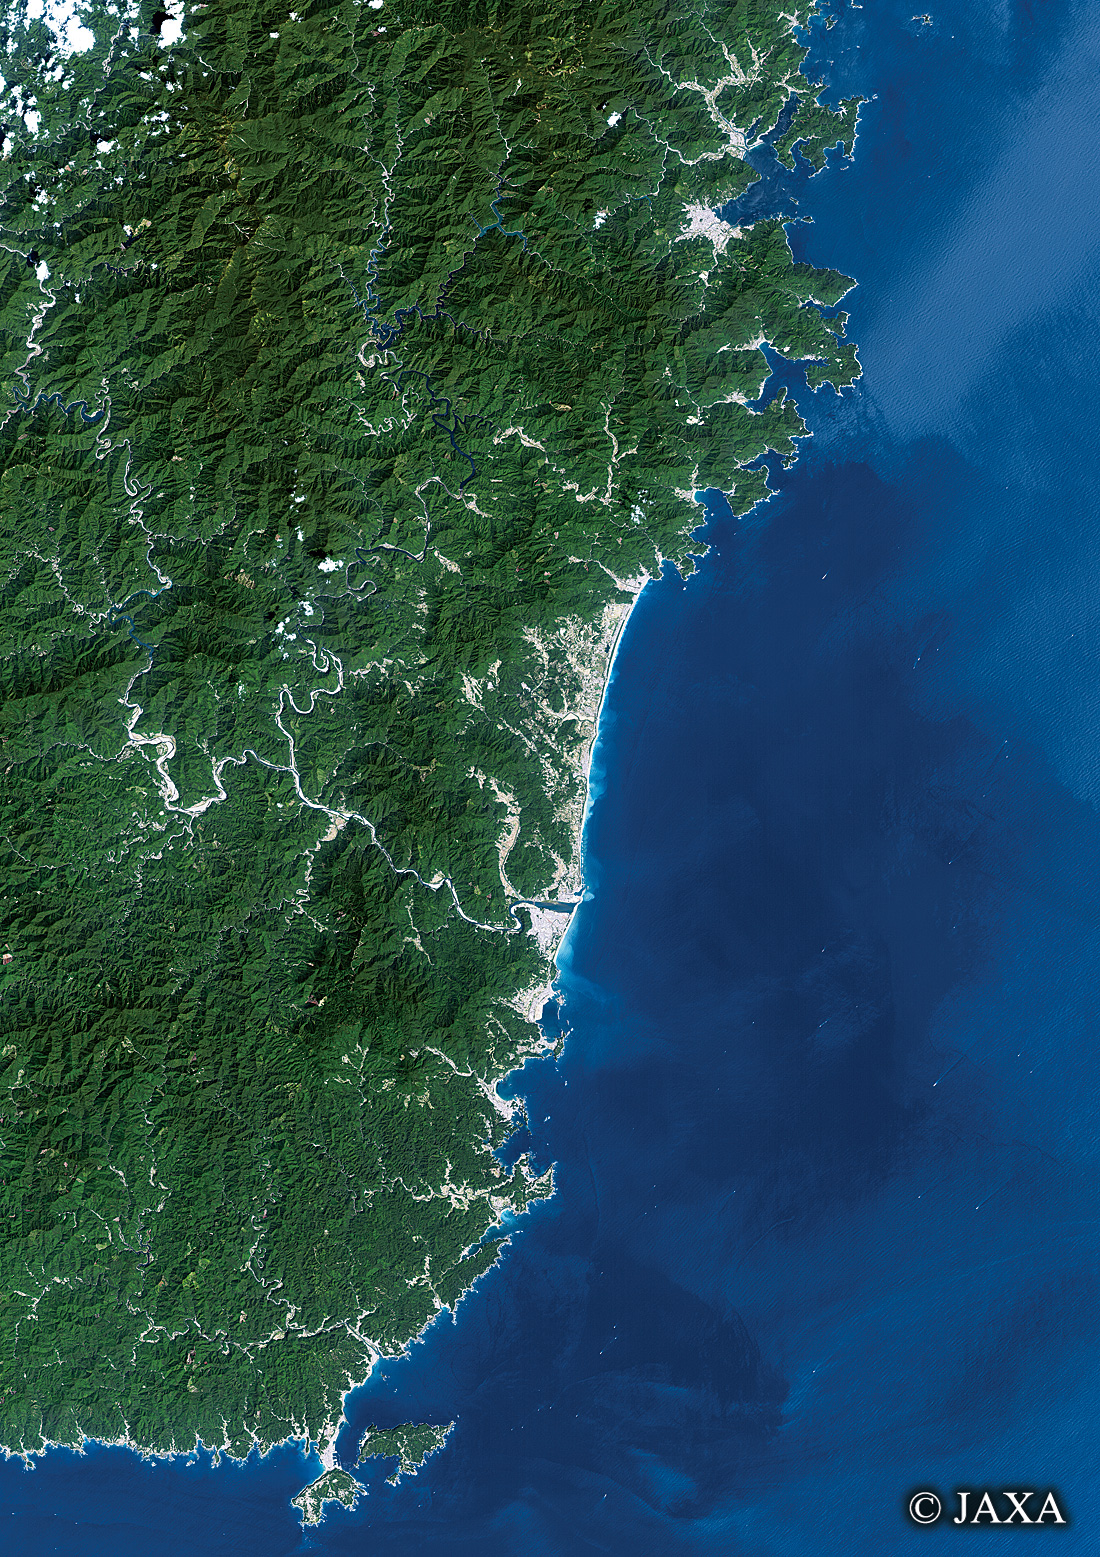 だいちから見た日本の都市 熊野古道:衛星画像